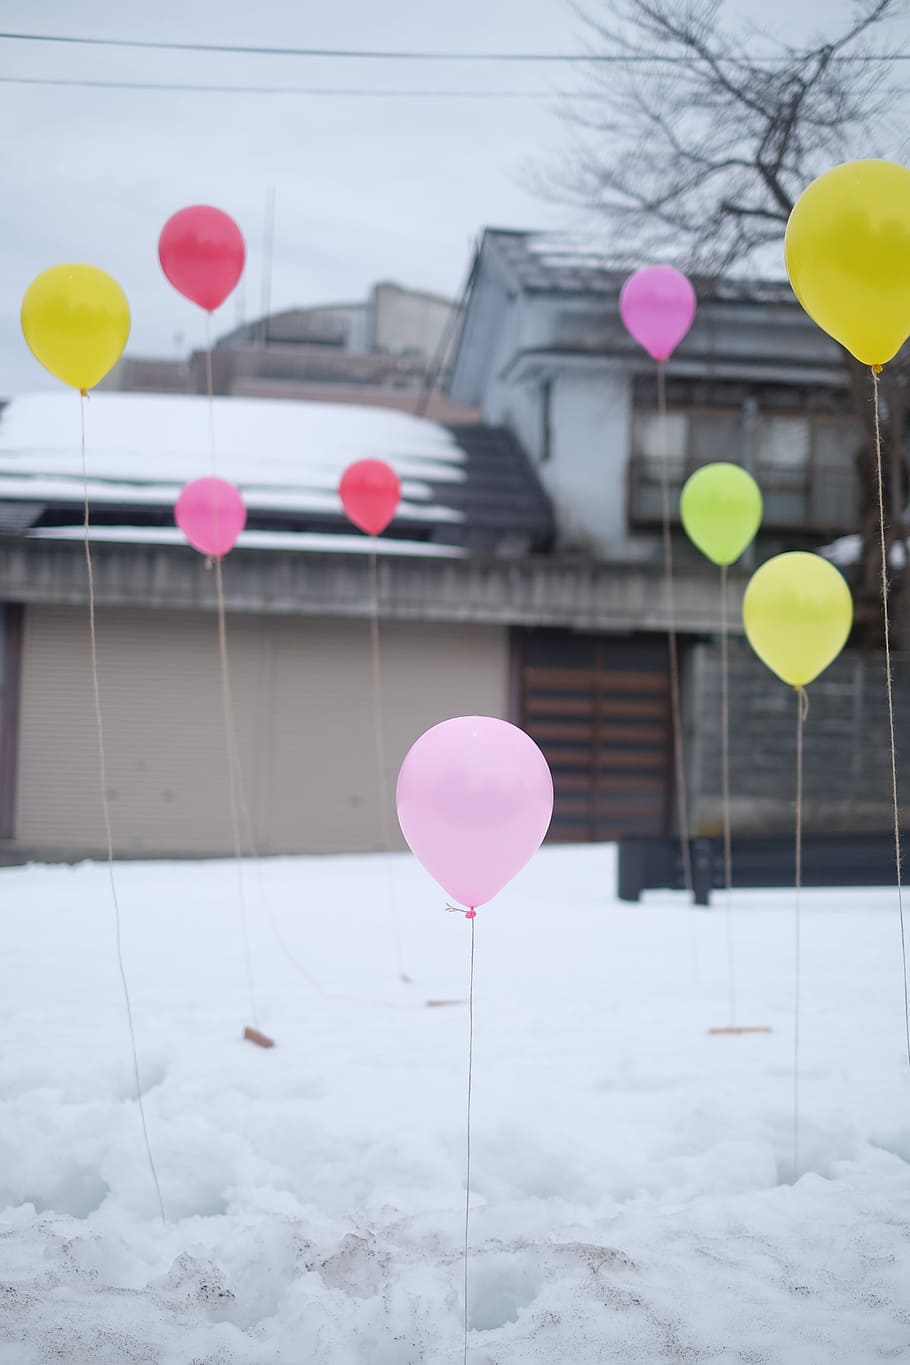 balões, festa, neve, garagem, casa, inverno, frio, aniversário, balão, cor rosa